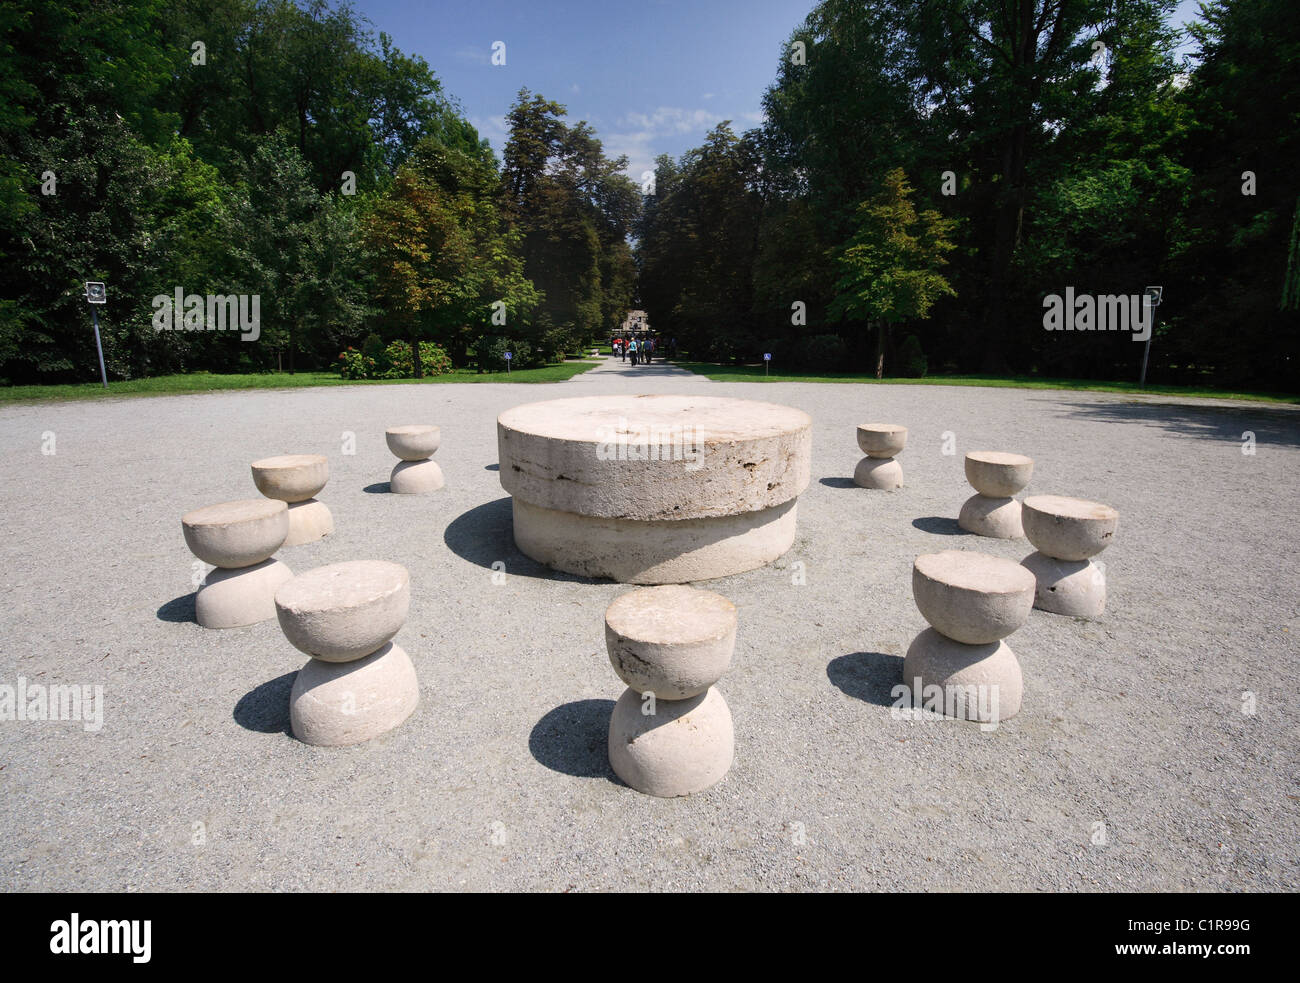 La Table du silence - La partie de l'ensemble sculptural de Constantin Brancusi à Târgu Jiu, Roumanie Banque D'Images